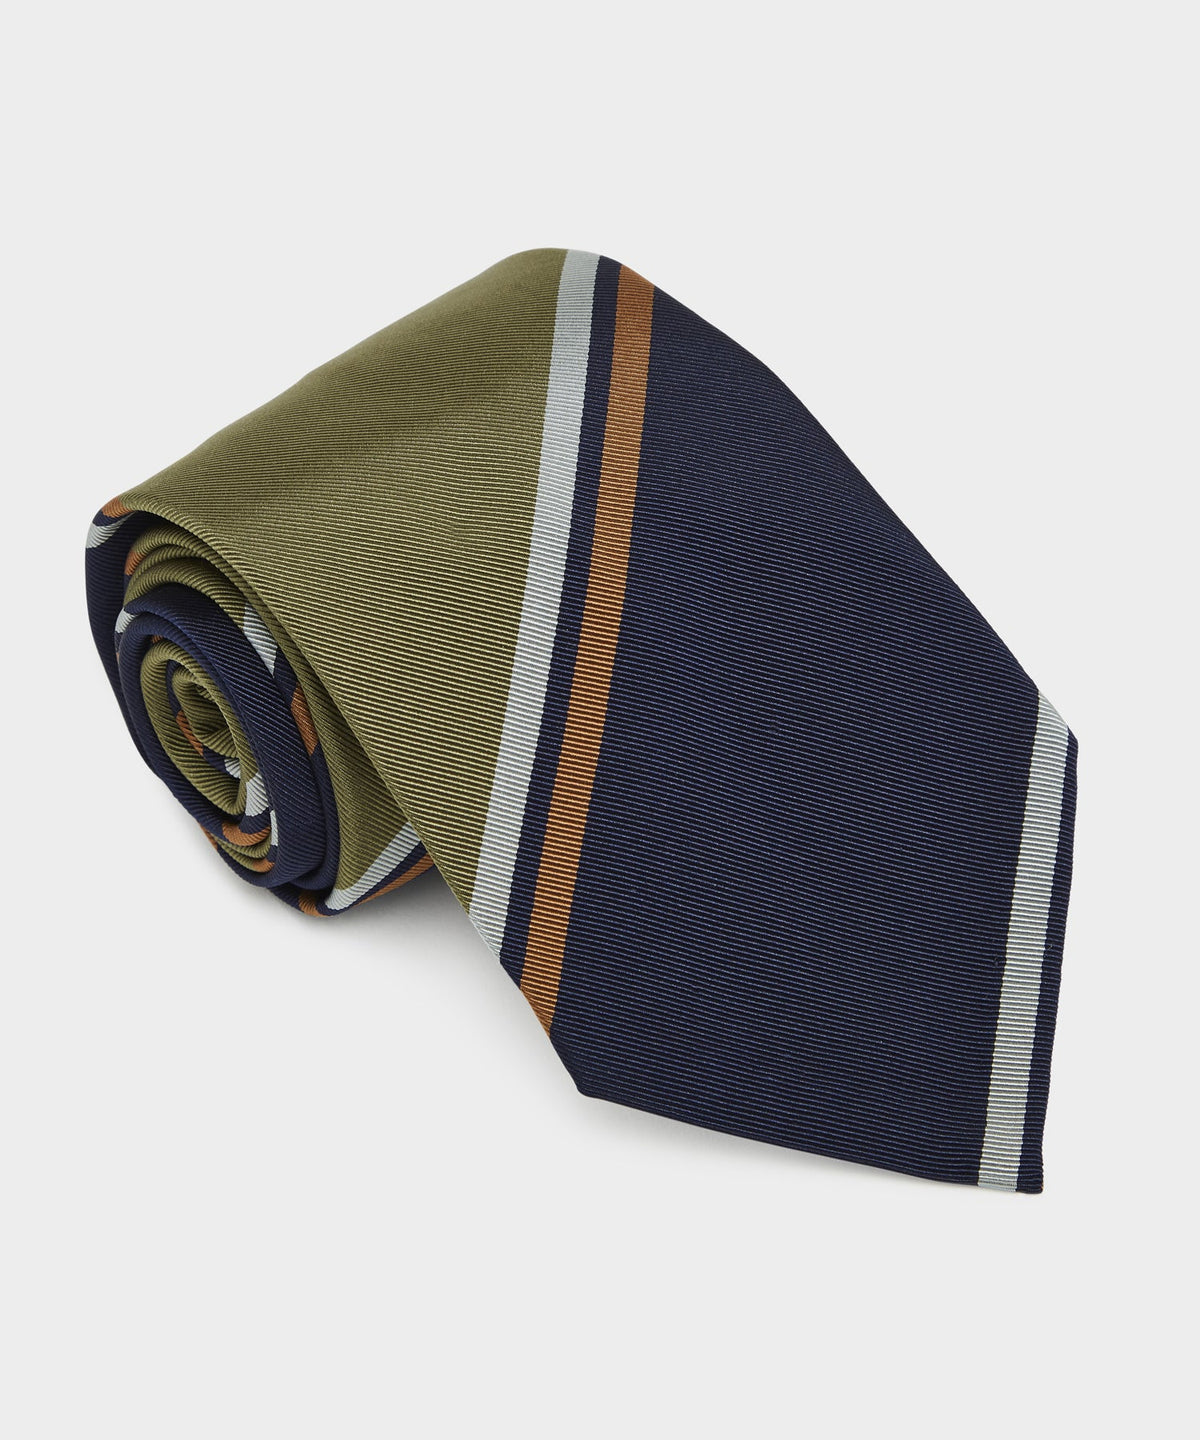 Italian Multi-Stripe Tie in Navy Olive